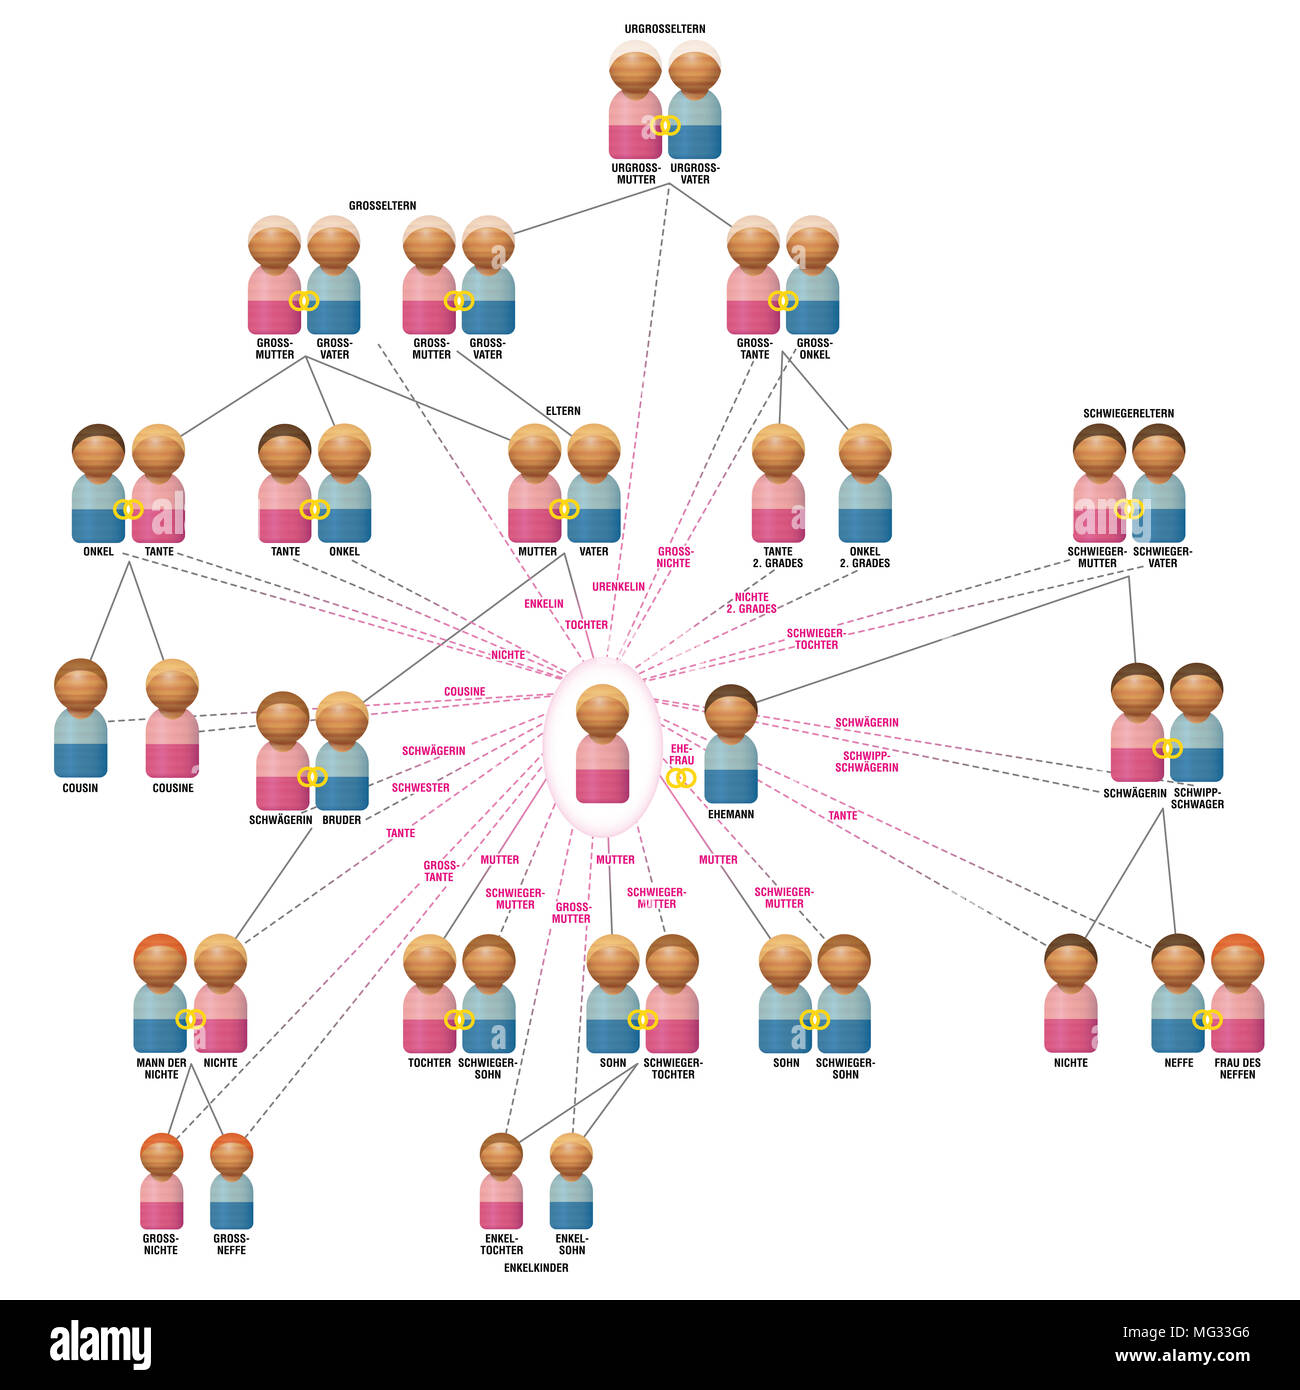 Familie Beziehung Netzwerk von einem womans Ansicht als Ehefrau, Mutter, Tochter, Schwester, Tante, Nichte etc., mit Familienmitgliedern. Deutsche Namen. Stockfoto